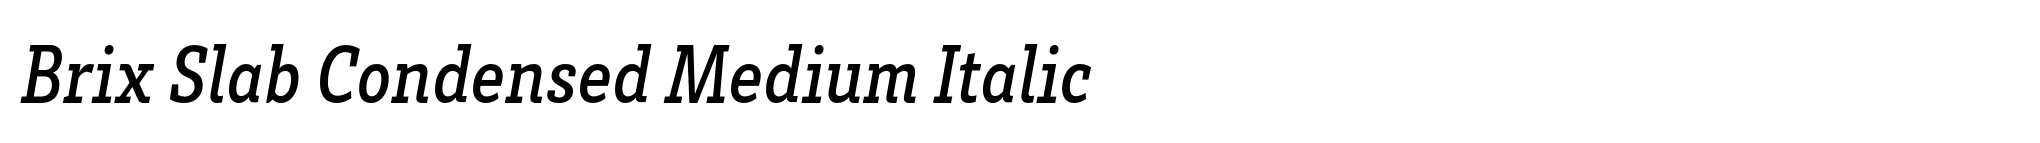 Brix Slab Condensed Medium Italic image